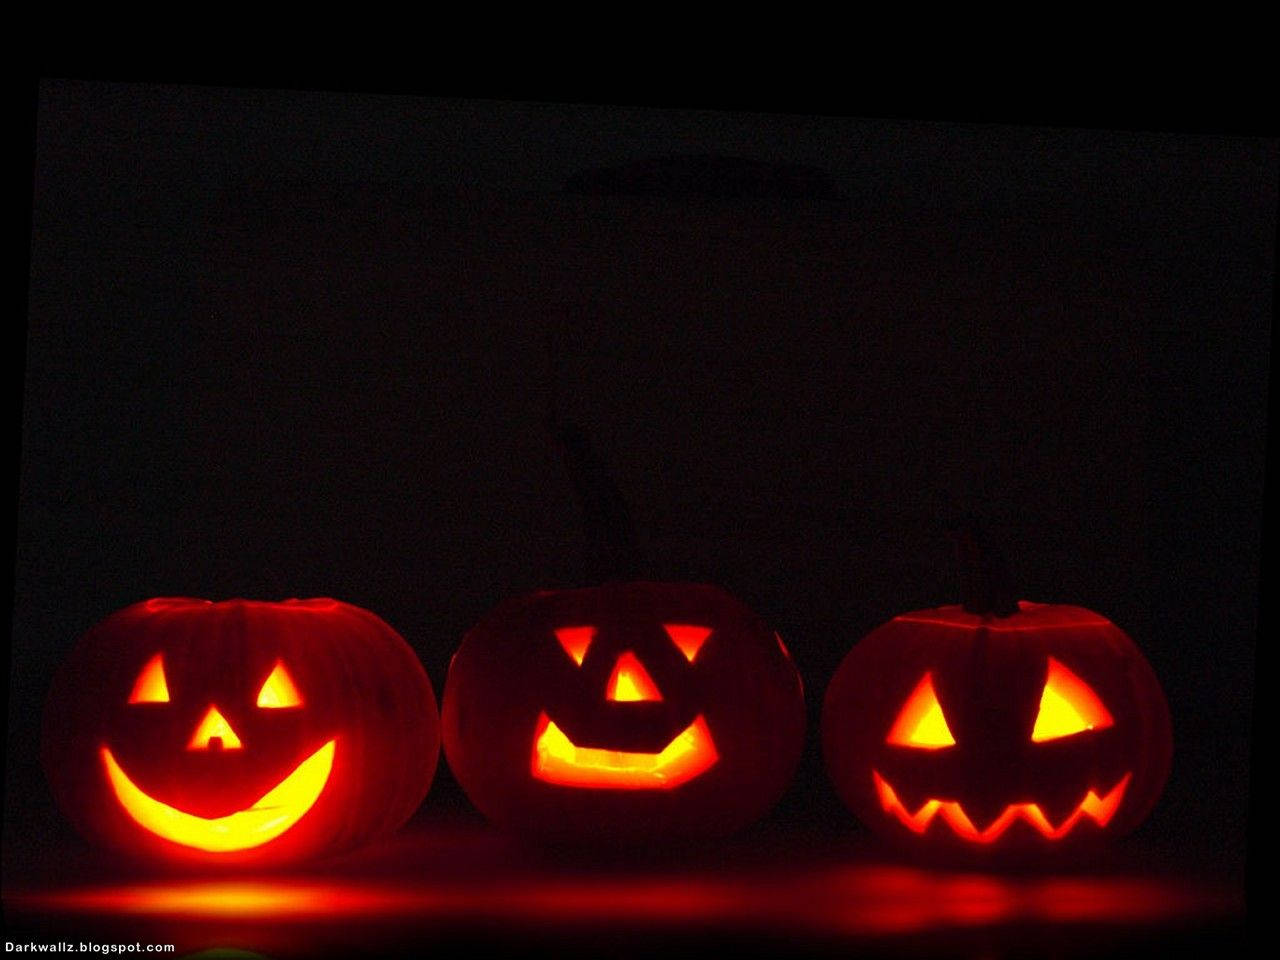 Dark Halloween Pumpkin Lanterns Background